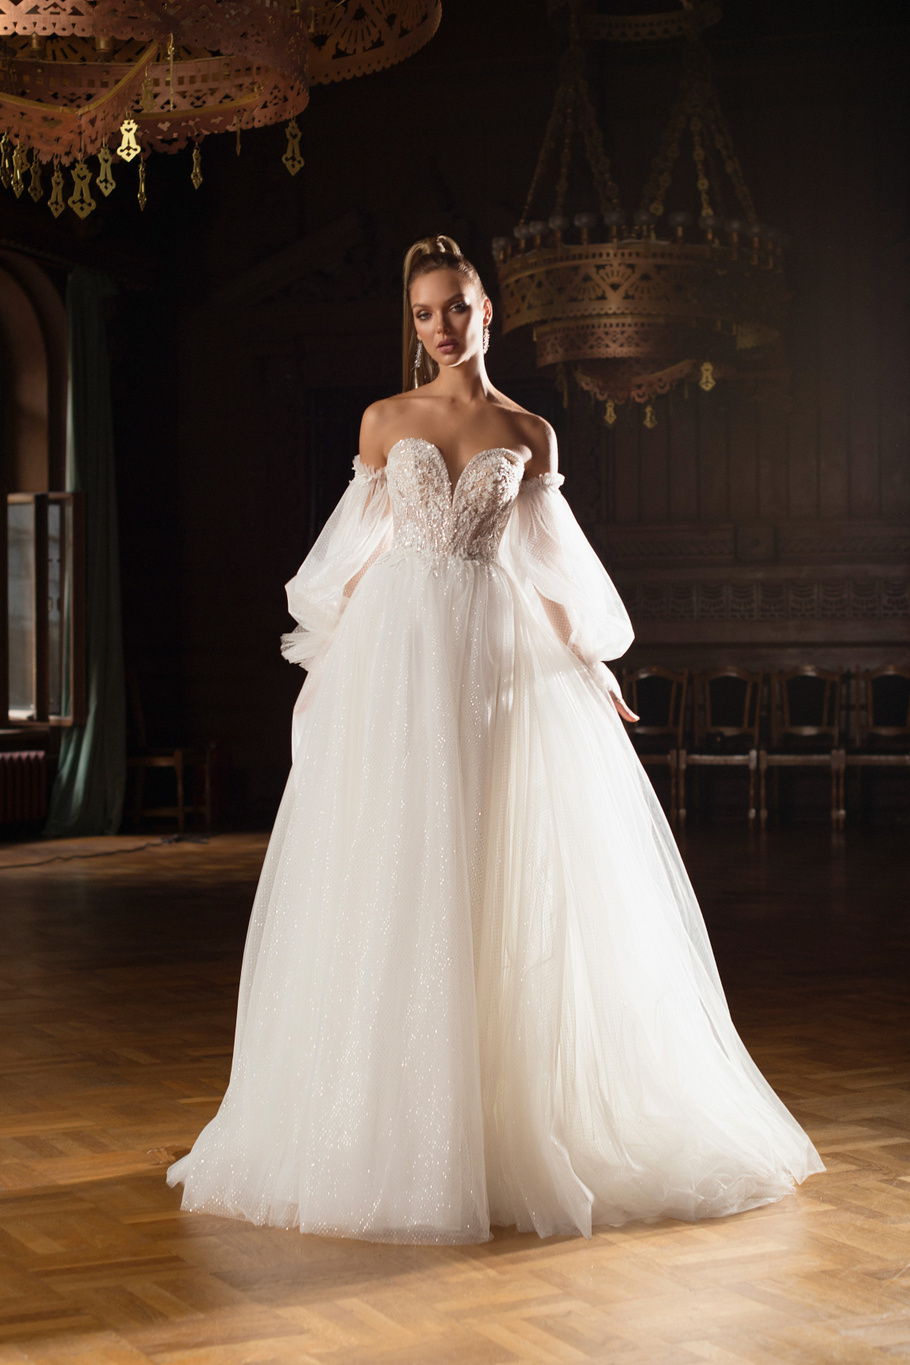 Купить свадебное платье «Флер» Мэрри Марк из коллекции Мистерия 2023 года в салоне «Мэри Трюфель»